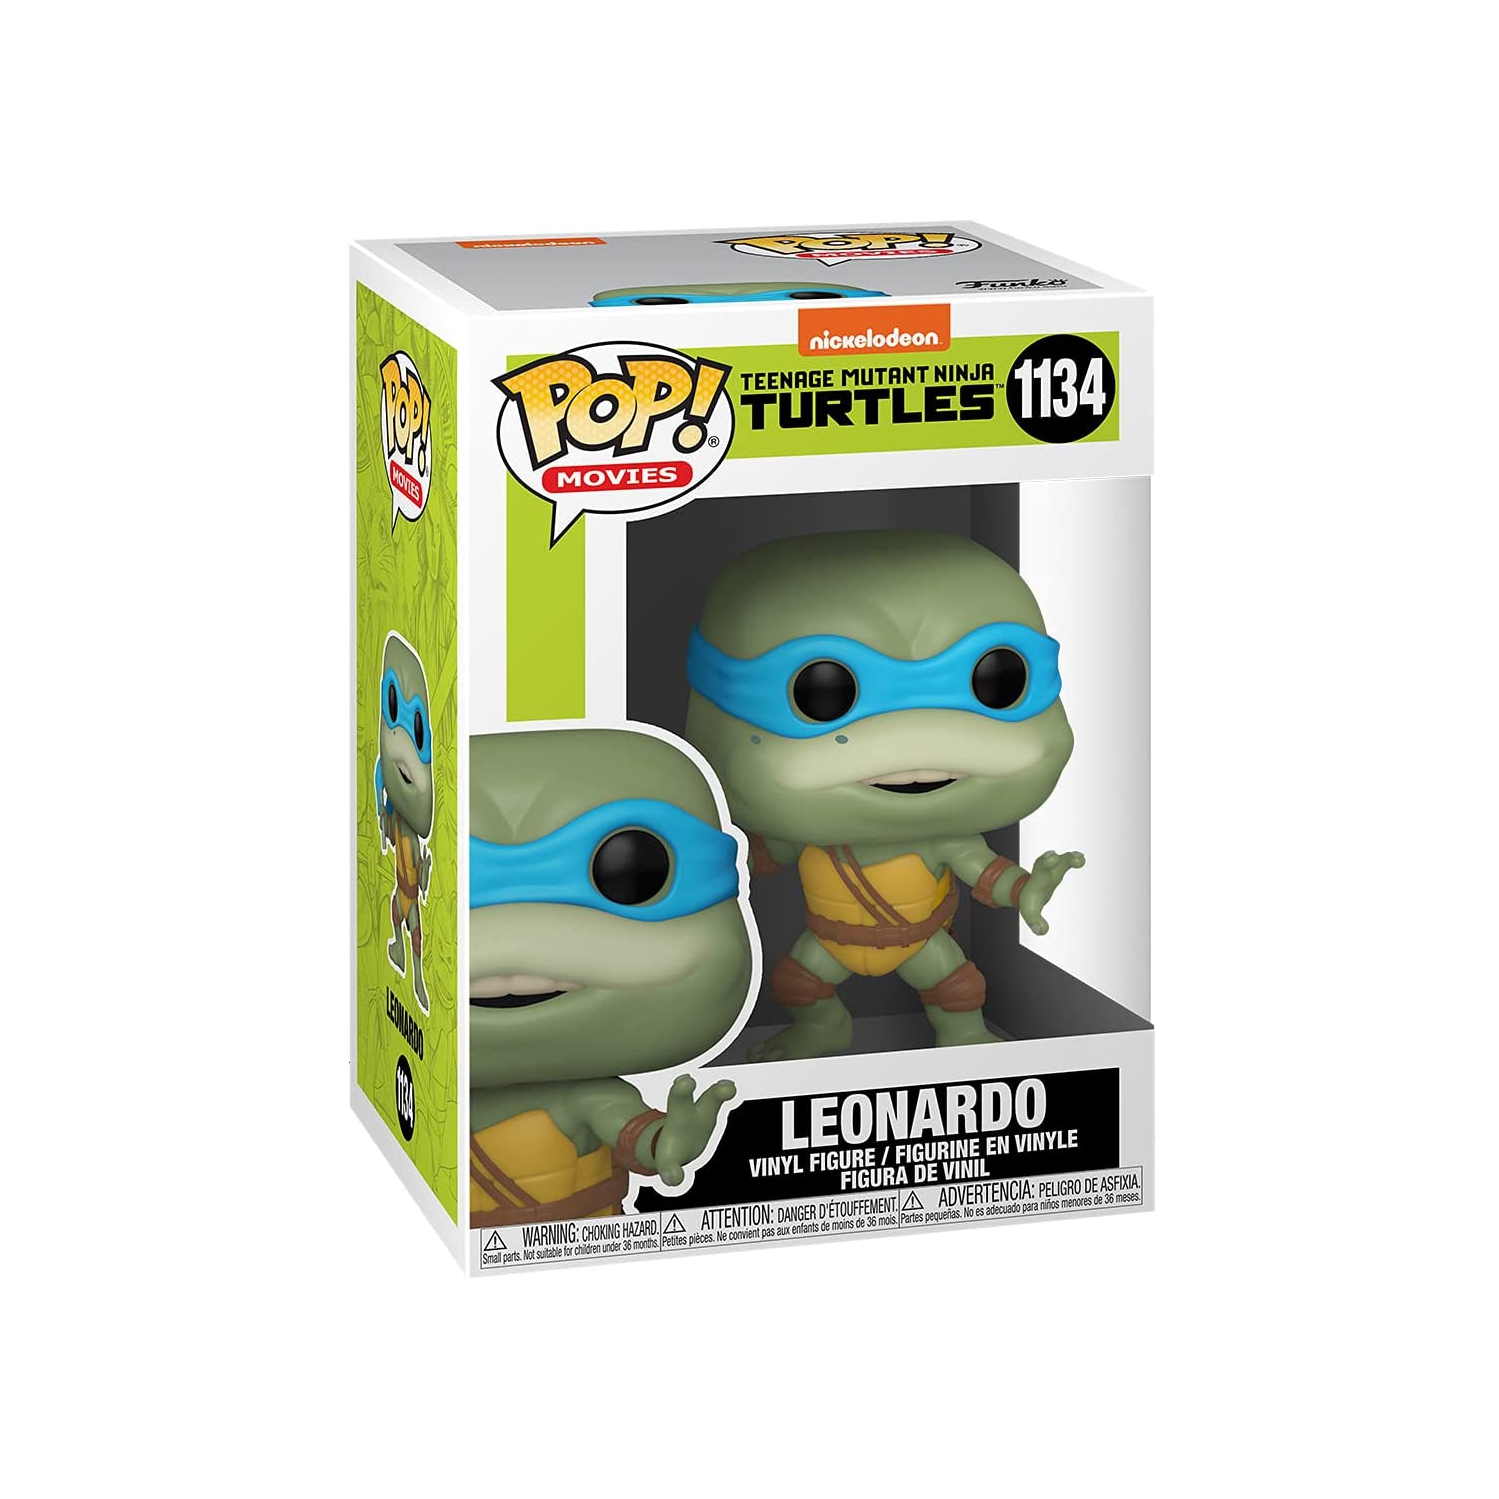 Pop Movies Teenage Mutant Ninja Turtles 3.75 Inch Action Figure - Leonardo #1134